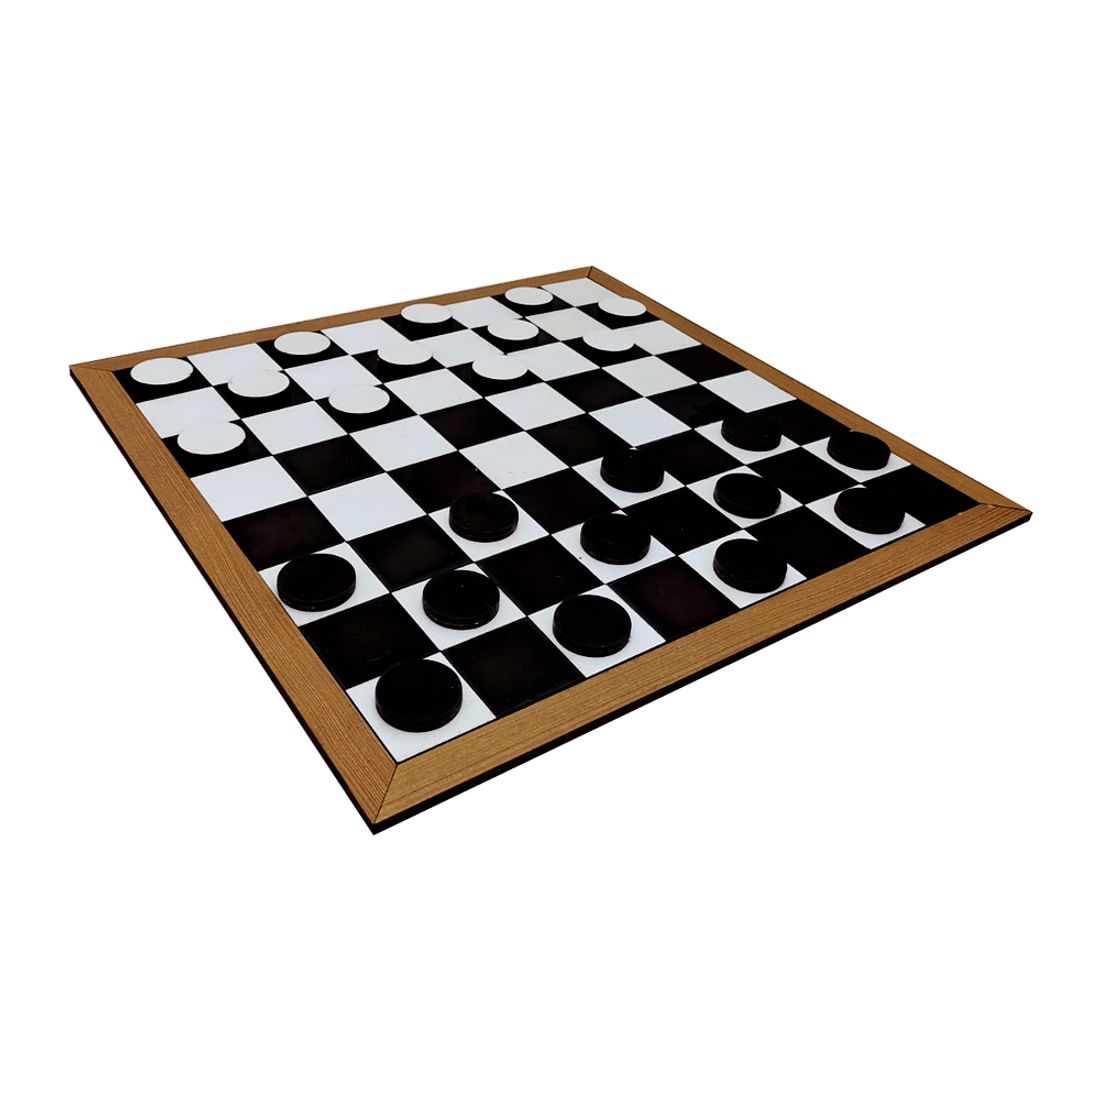 Jogo de dama com tabuleiro de madeira mdf + 24 peças - COLUNA